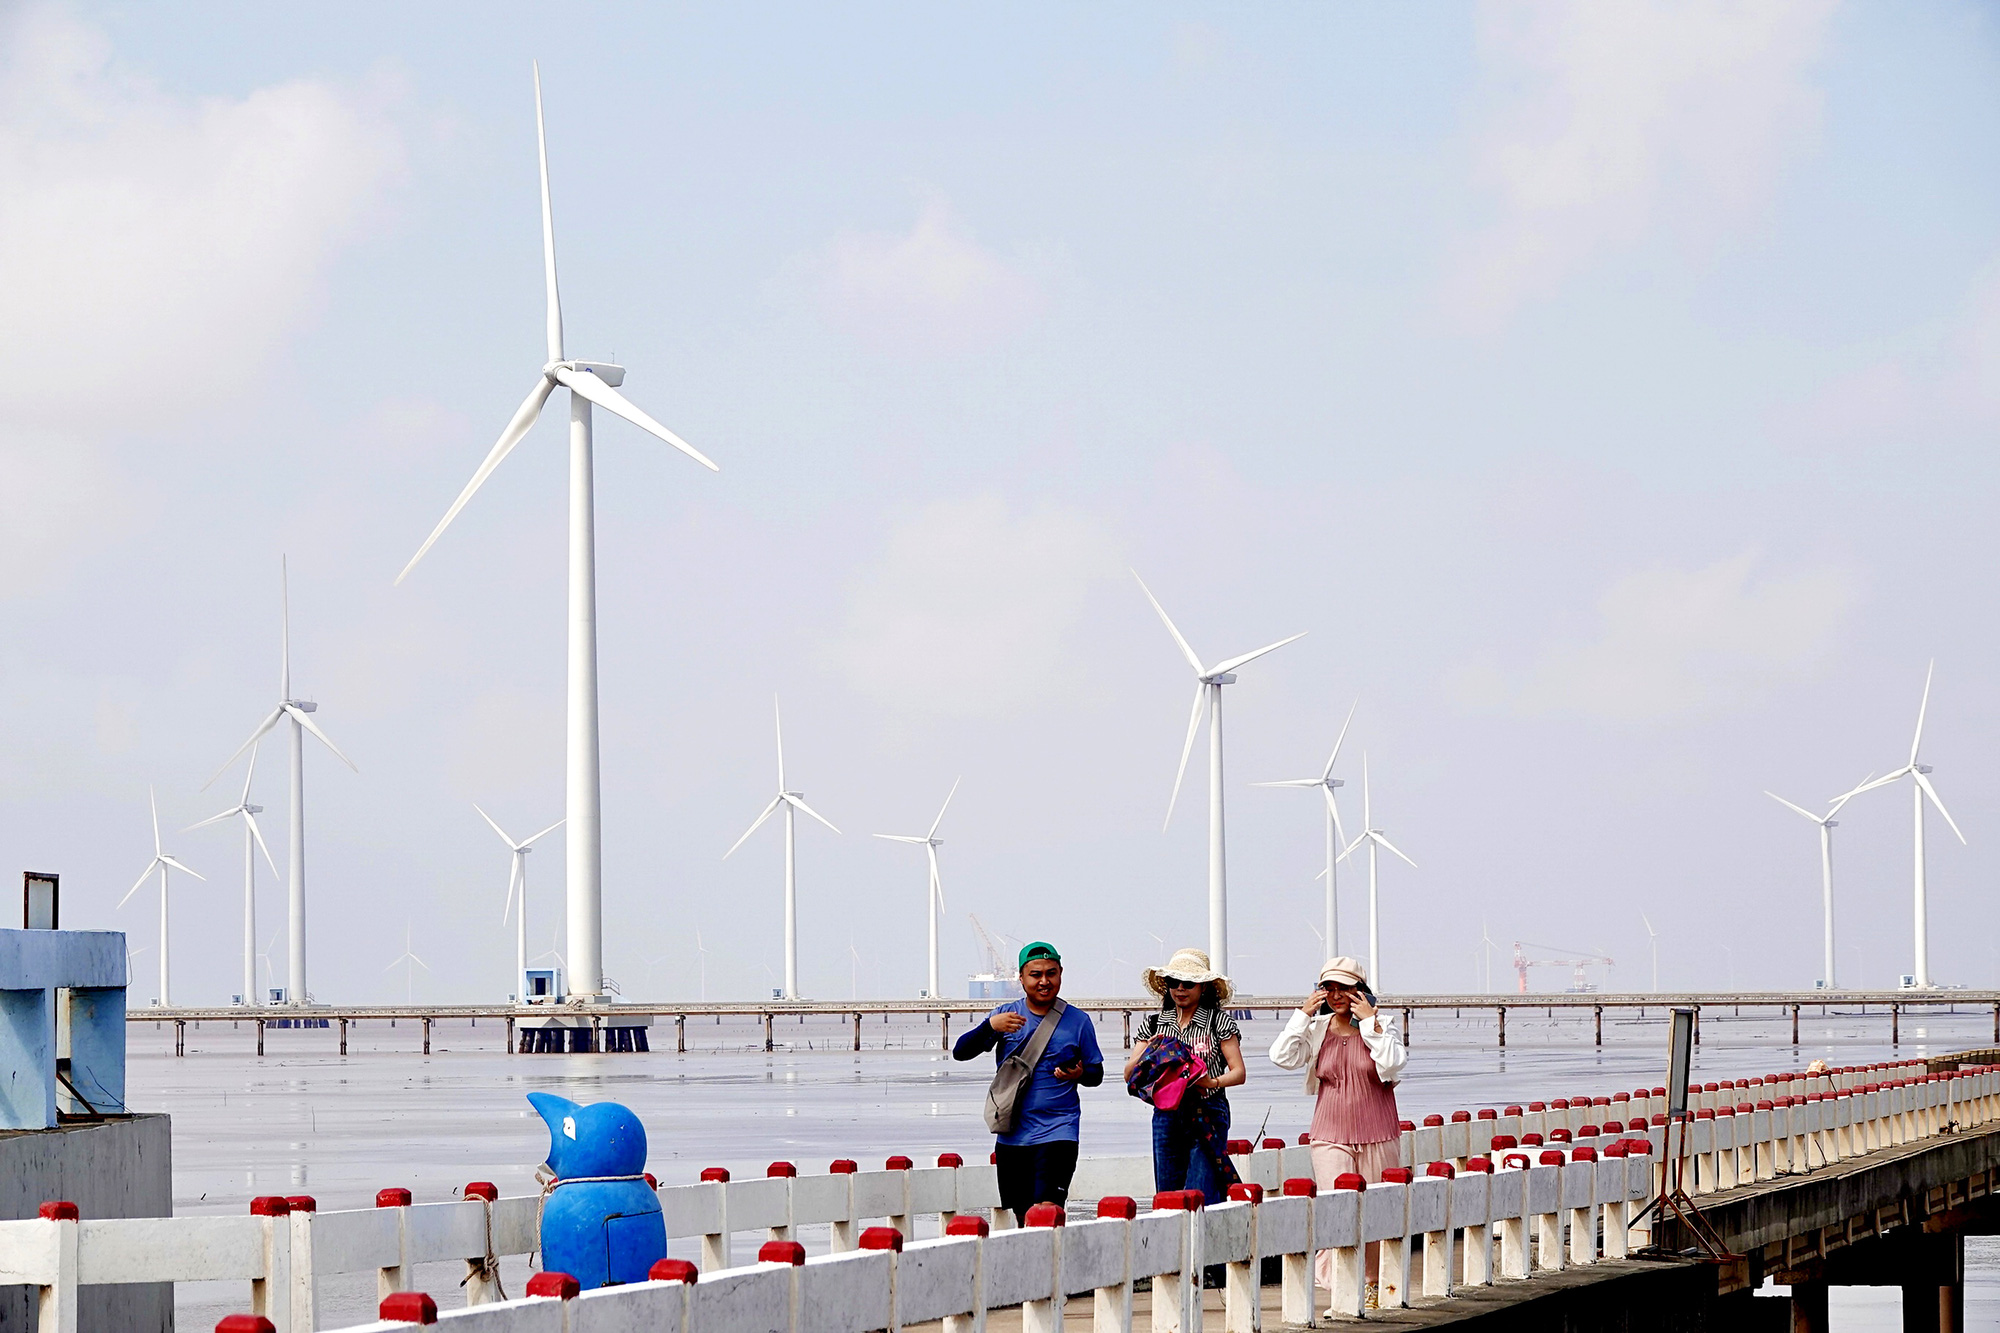 Cánh đồng điện gió tại huyện Vĩnh Trạch Đông, TP Bạc Liêu (tỉnh Bạc Liêu) trở thành điểm thu hút khách du lịch - Ảnh: T.T.D.